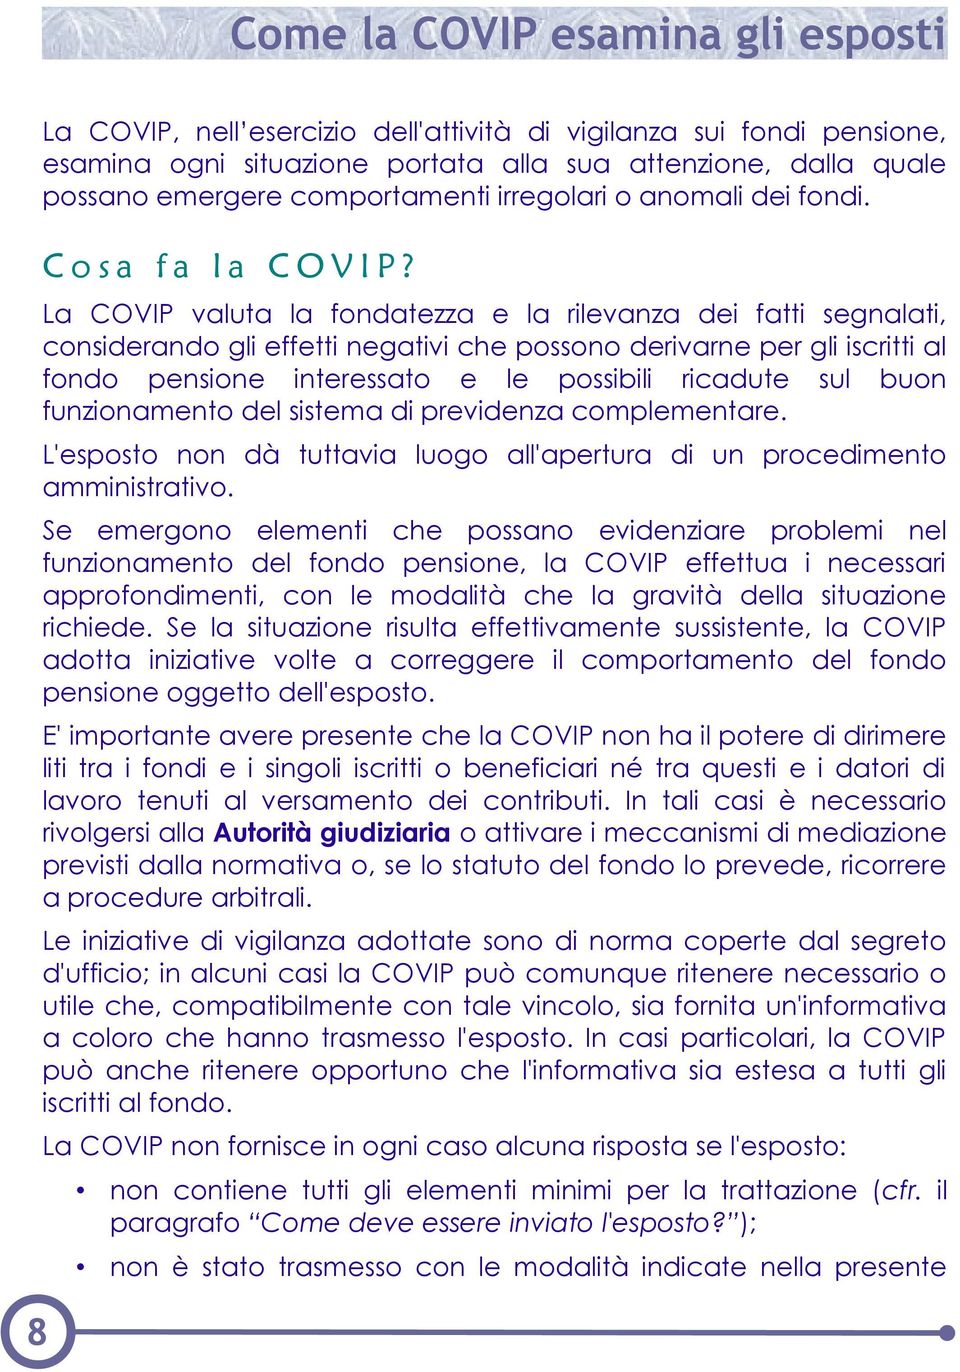 La COVIP valuta la fondatezza e la rilevanza dei fatti segnalati, considerando gli effetti negativi che possono derivarne per gli iscritti al fondo pensione interessato e le possibili ricadute sul